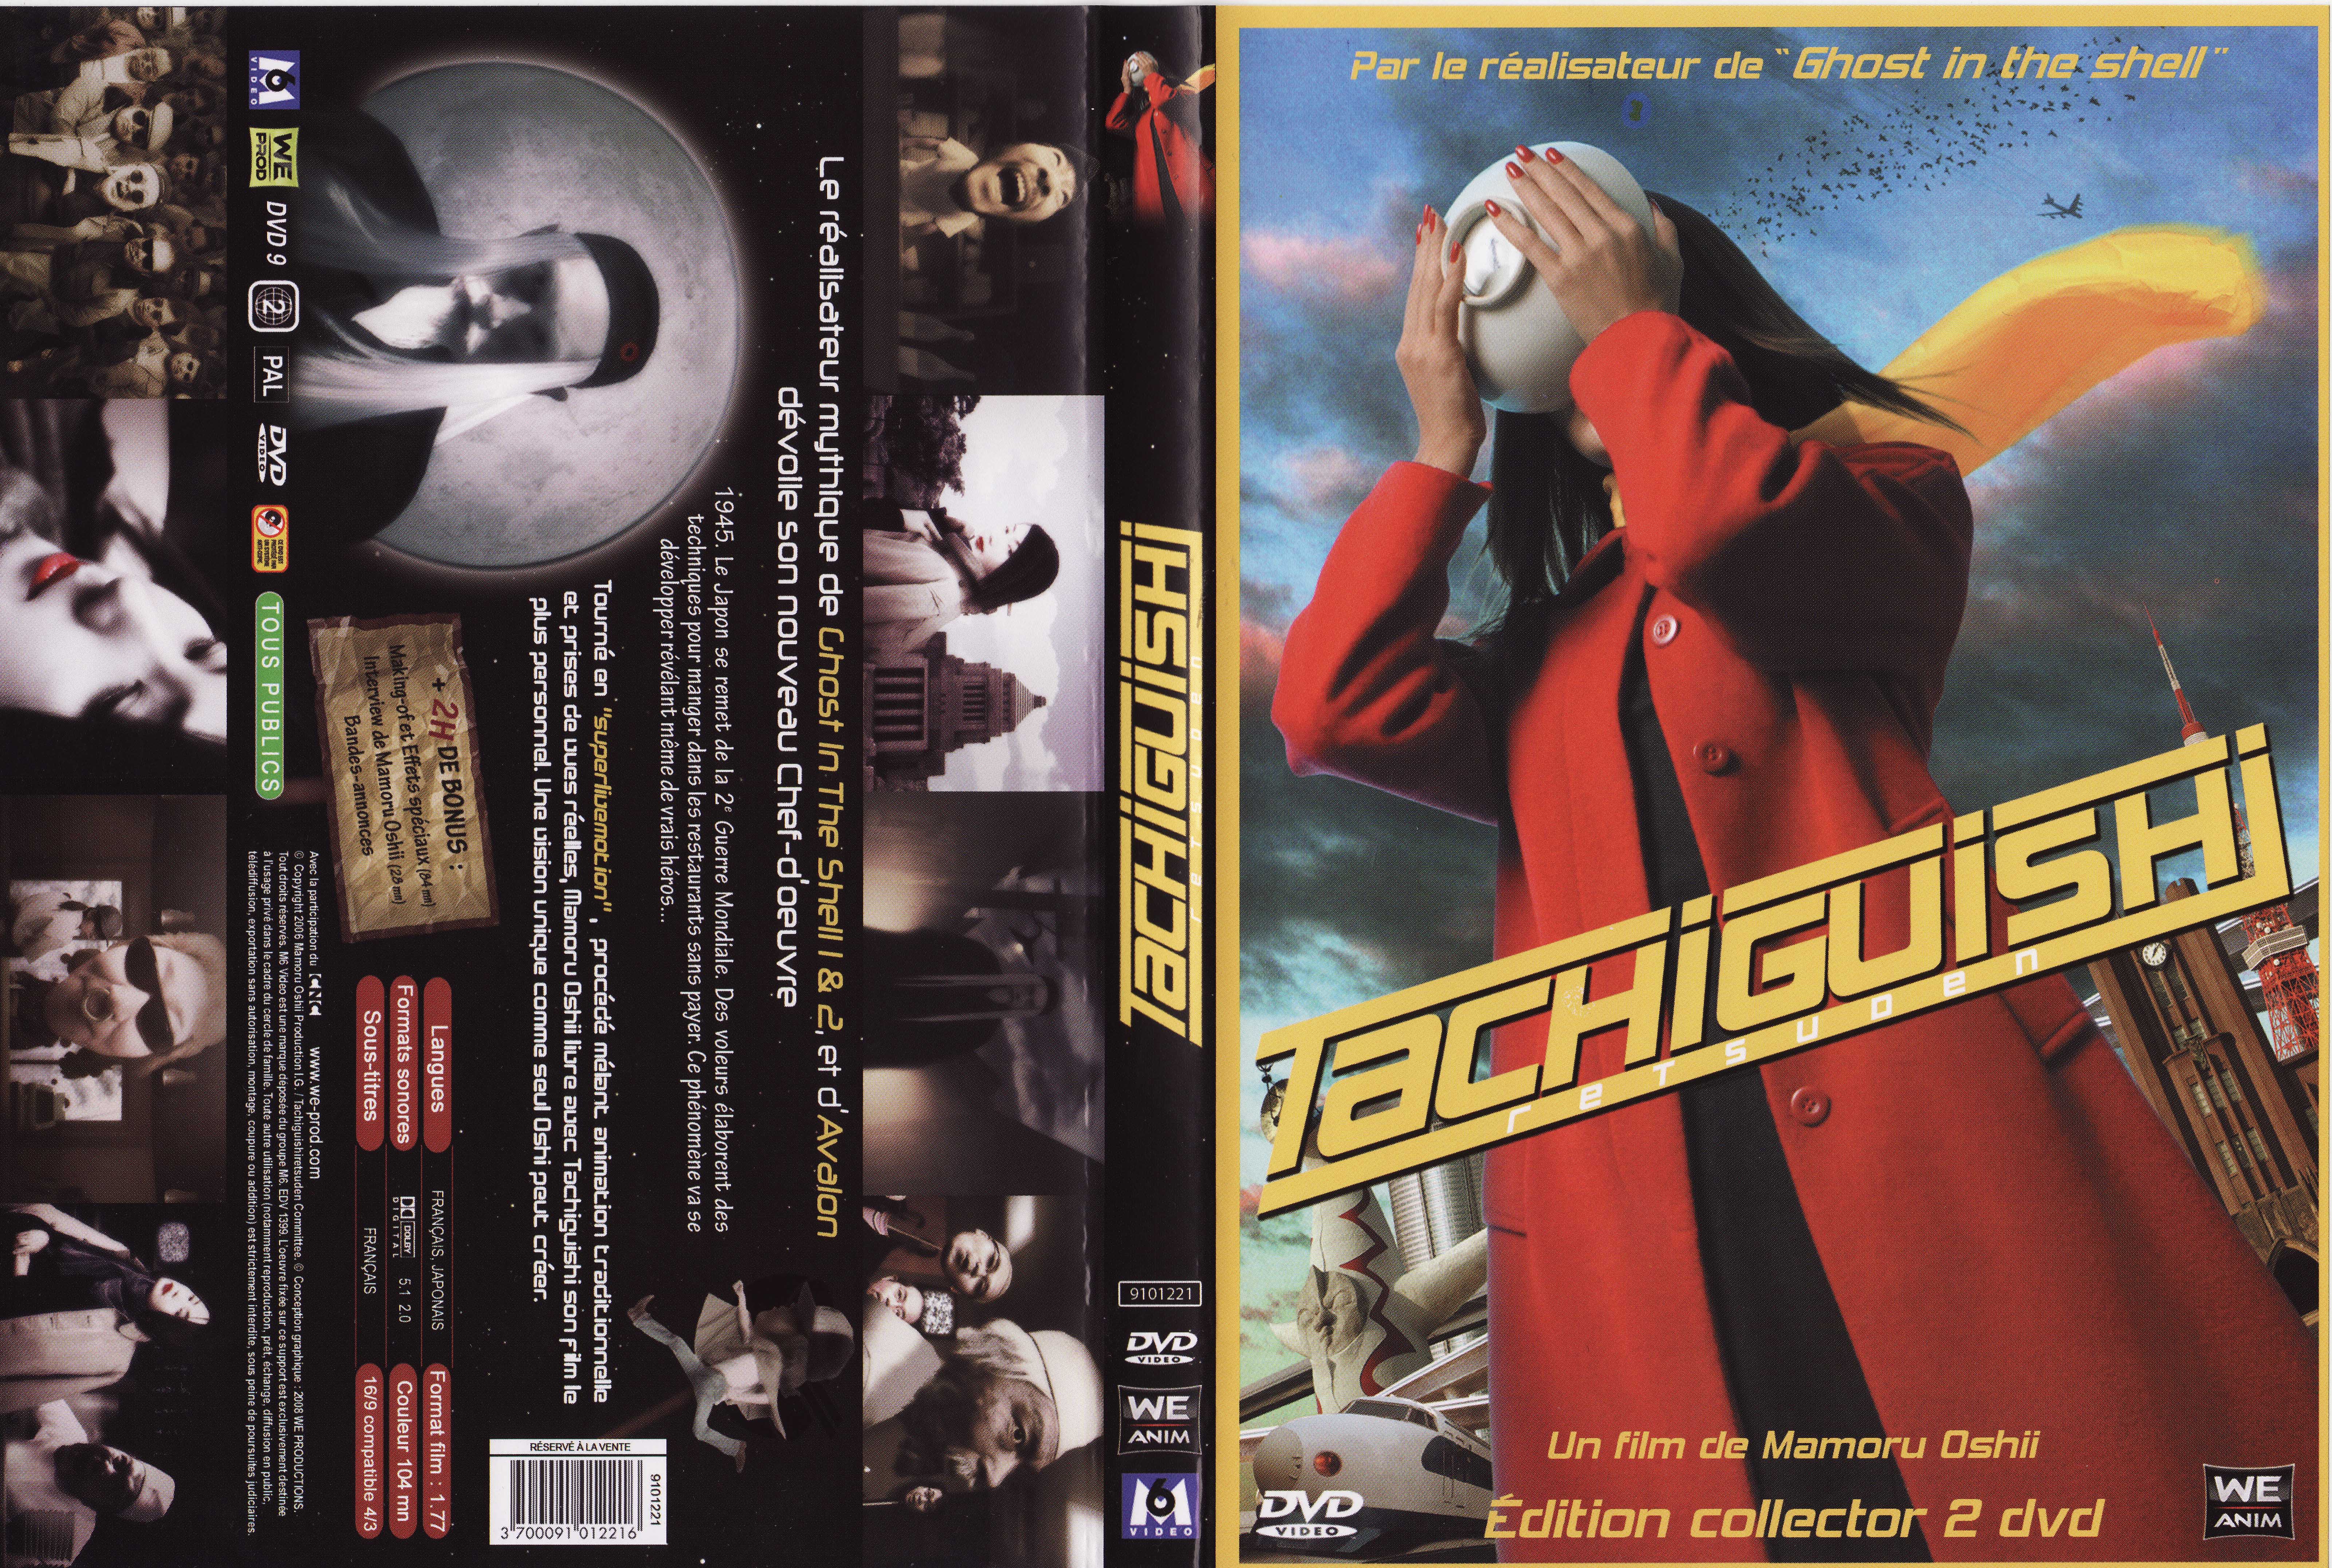 Jaquette DVD Tachigushi